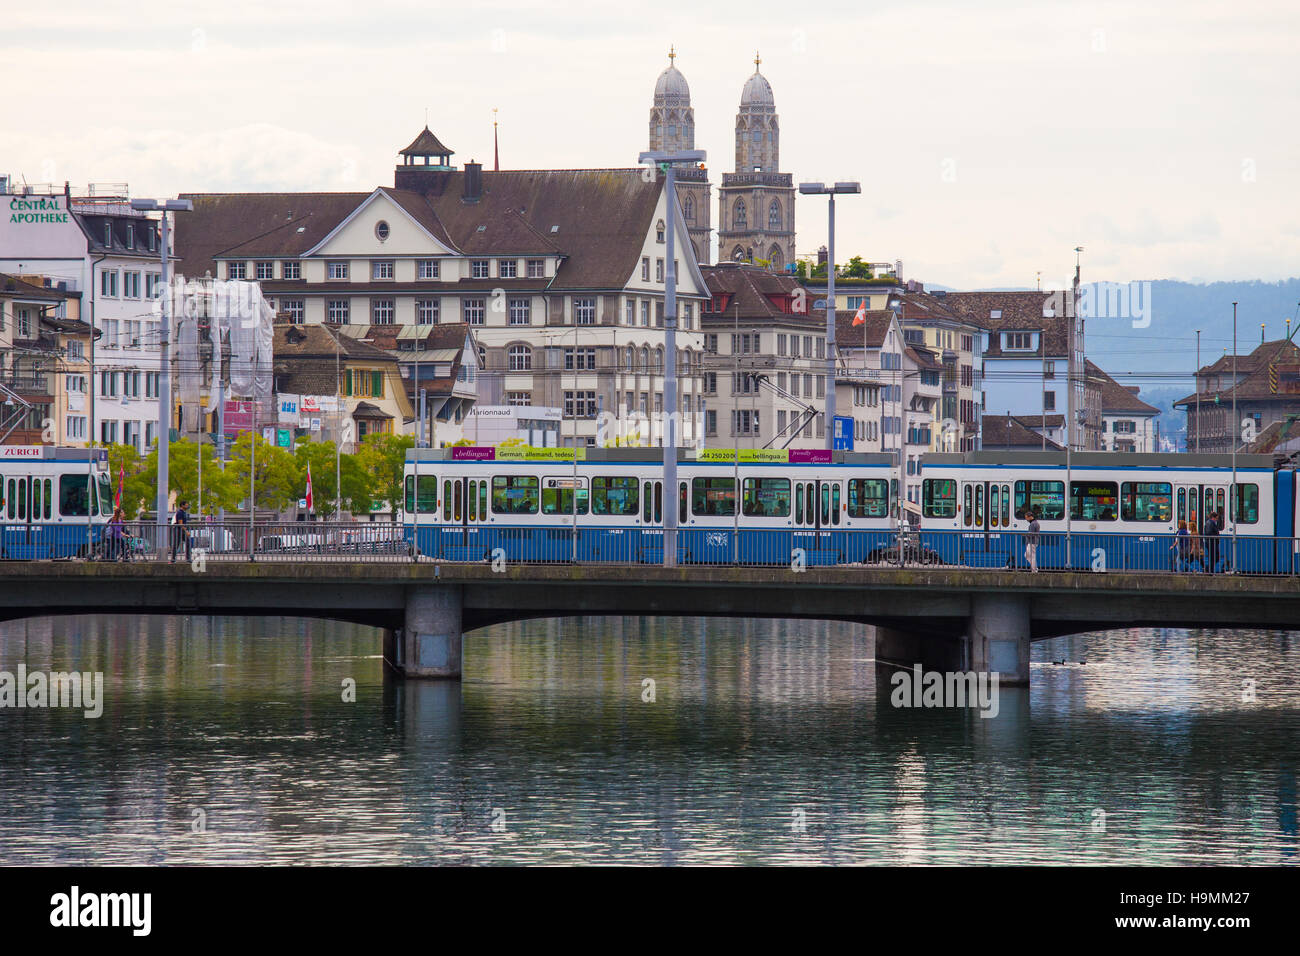 Zurigo il trasporto pubblico (VBZ) oltre il fiume Limmat, Zurigo, Svizzera Foto Stock